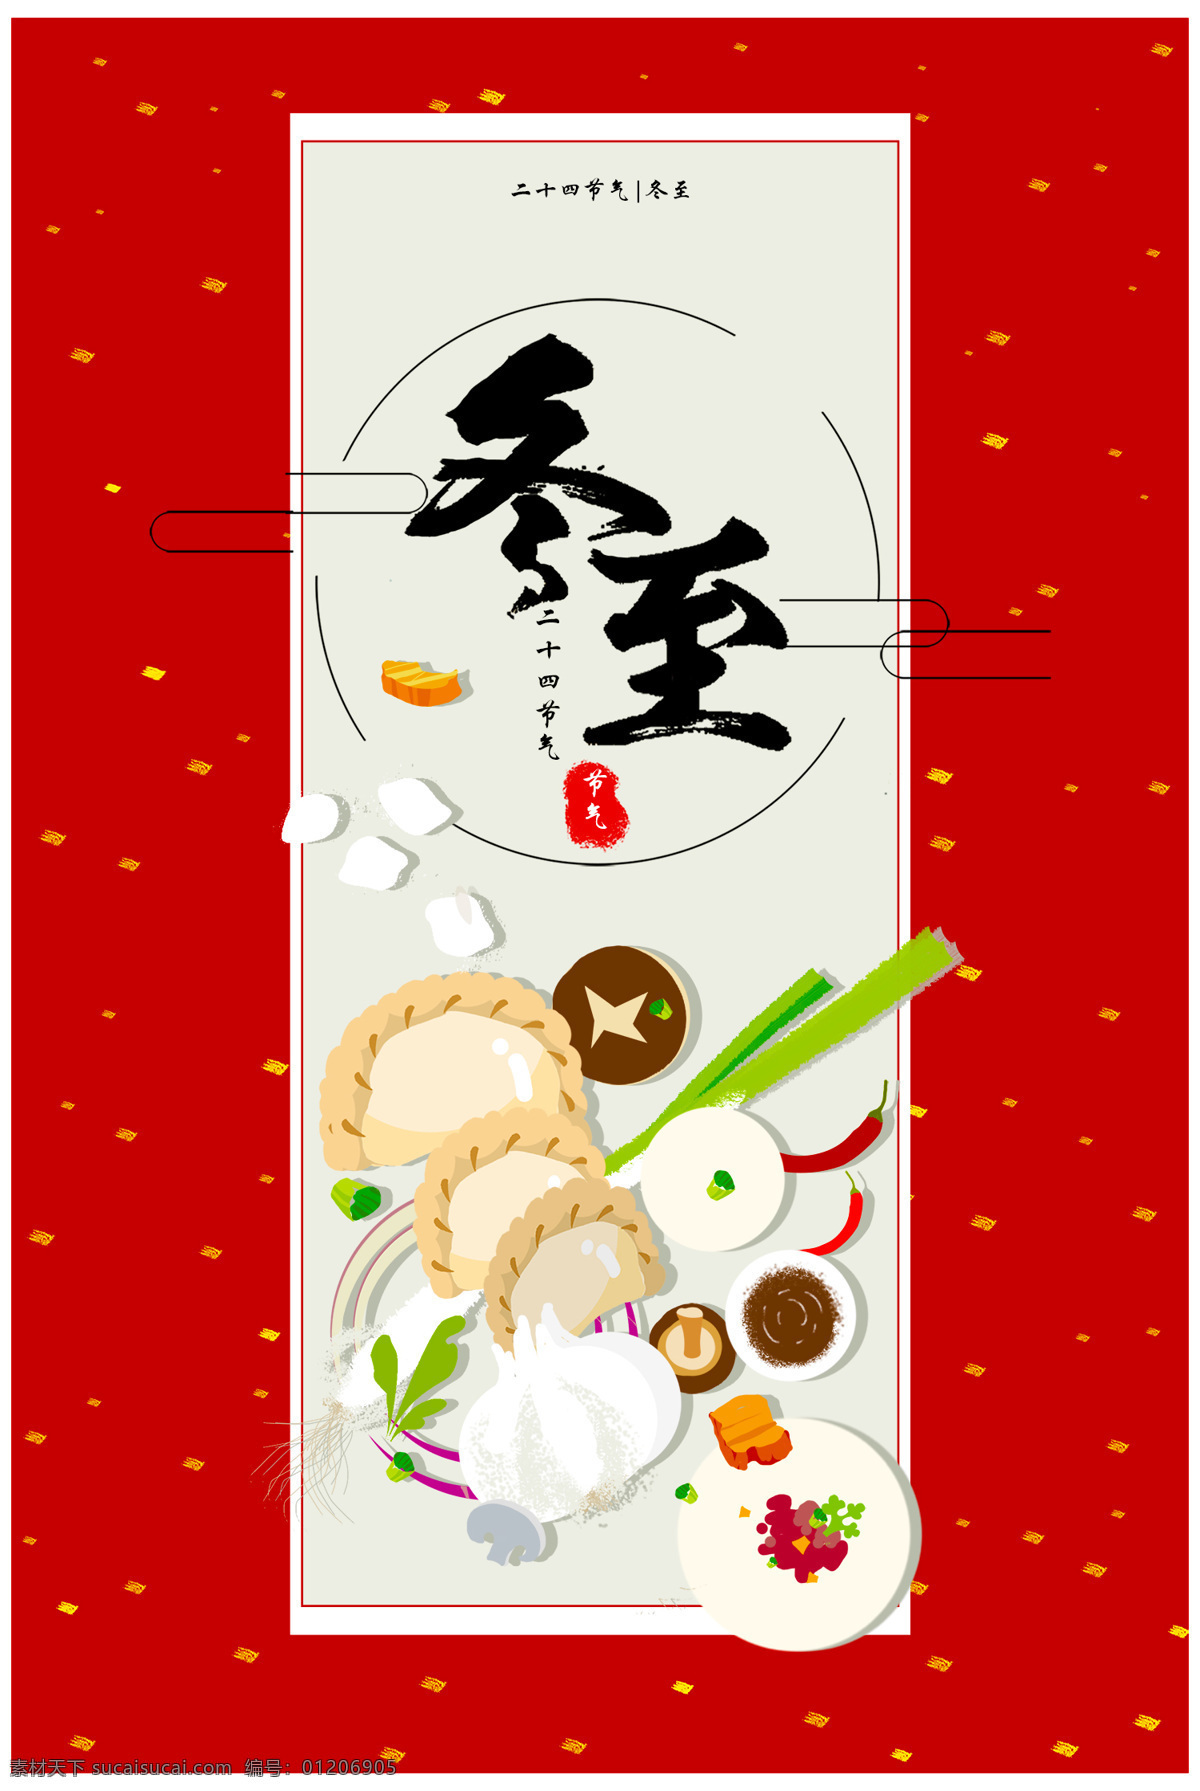 冬至 就要 一起 包 饺子 插画 元素 海报 展板 包饺子 吃饺子